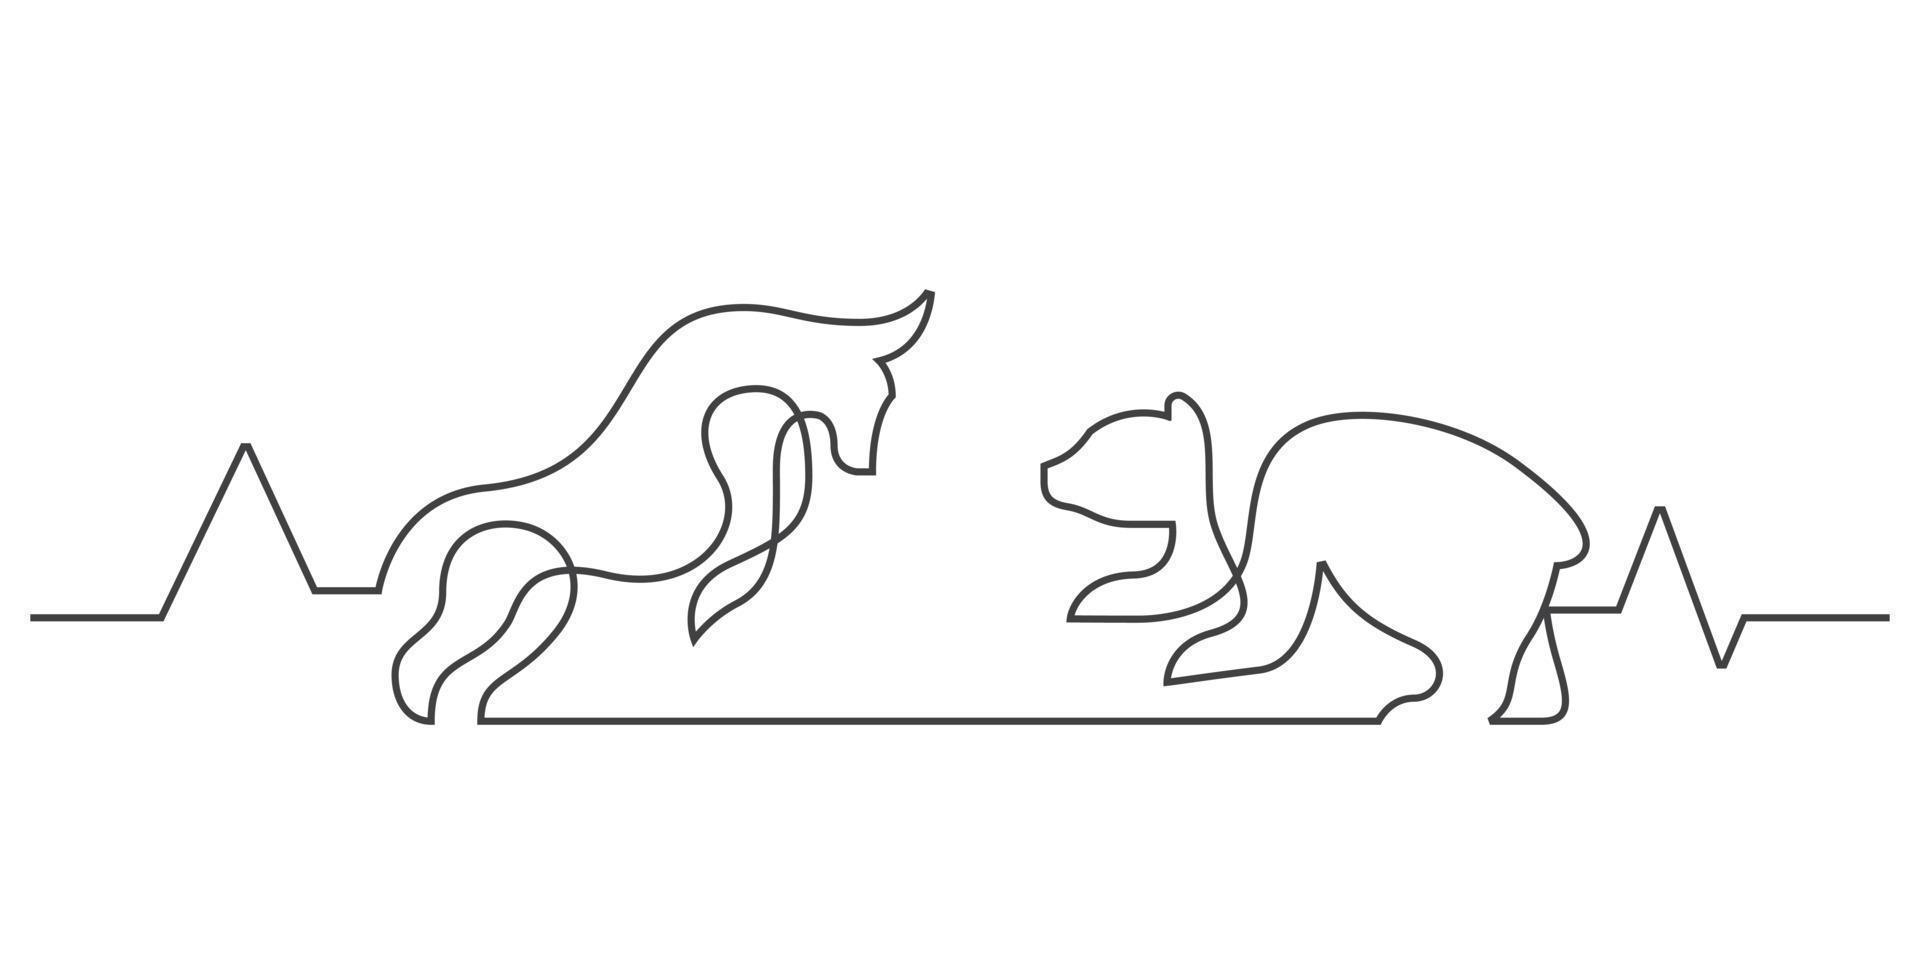 voorraad markt uitwisseling stier en beer concept doorlopend lijn tekening vector